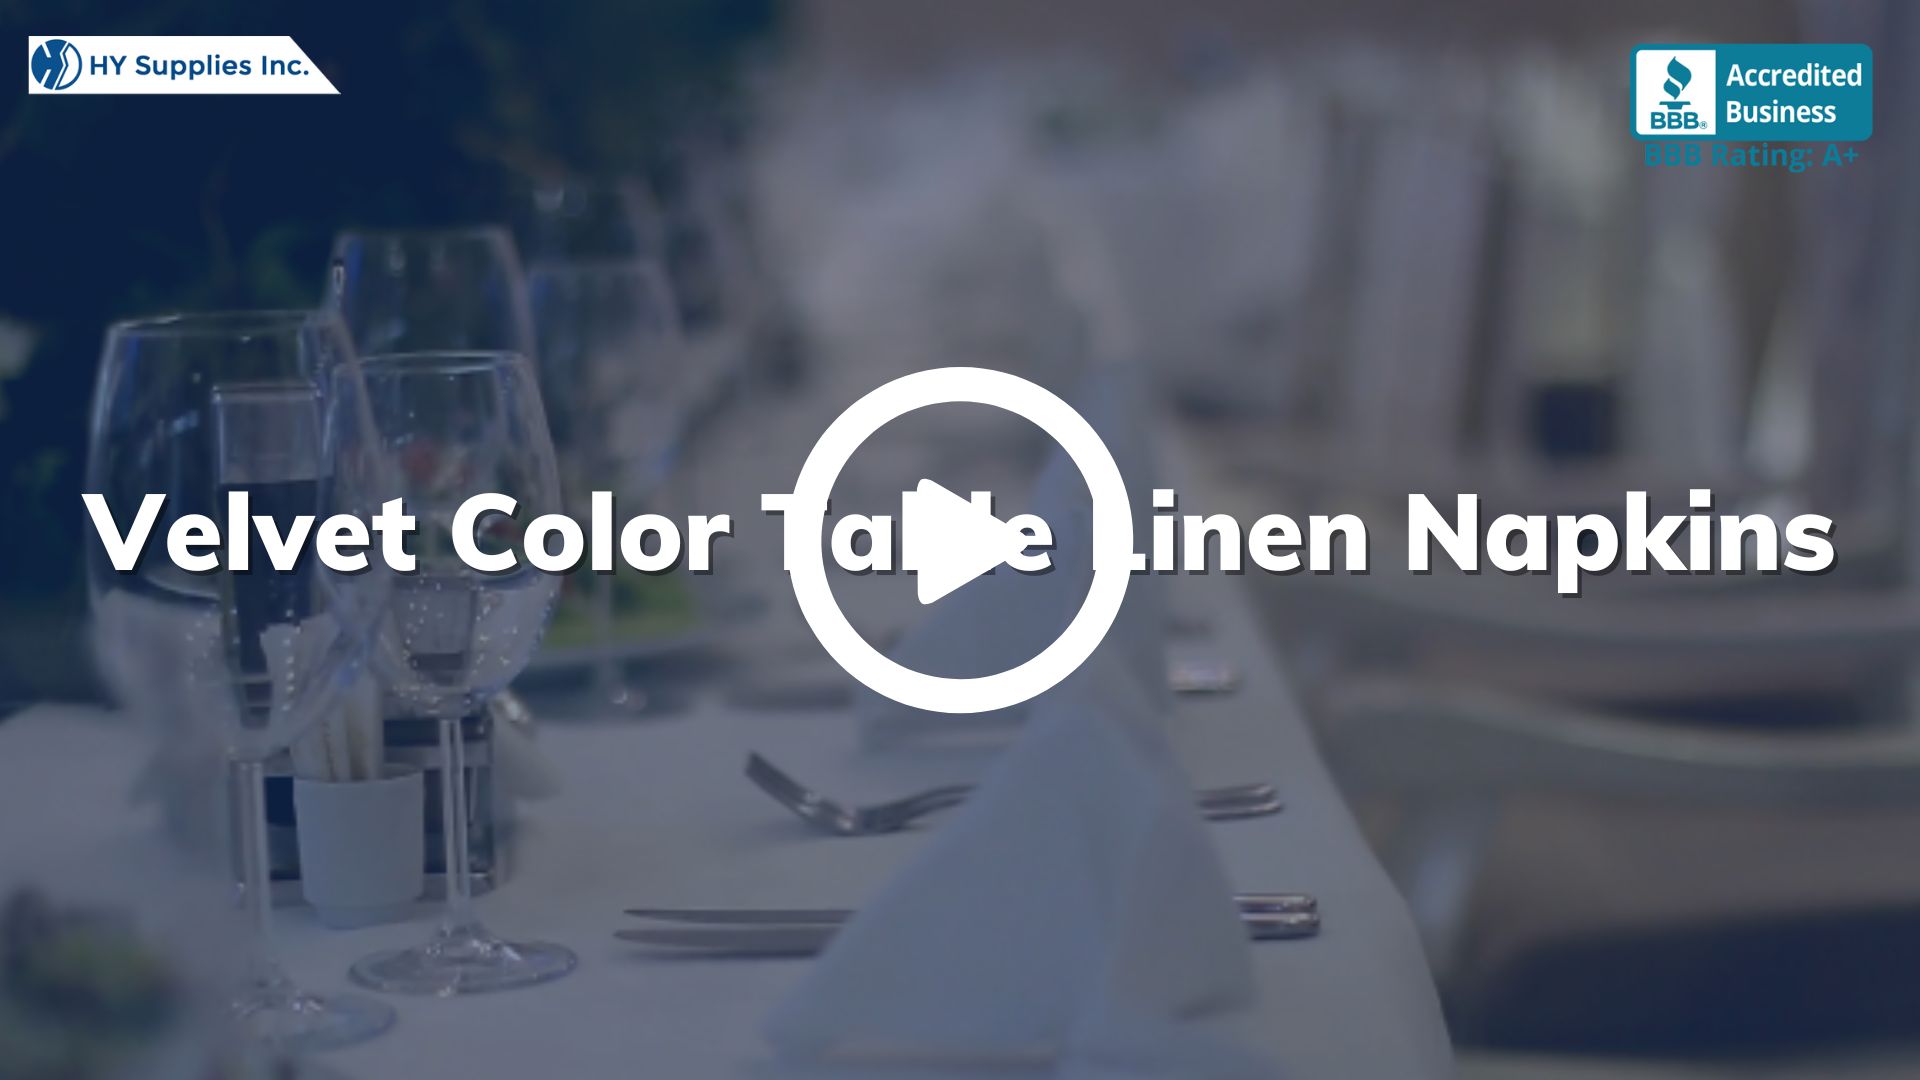 Velvet Color Table Linen Napkins